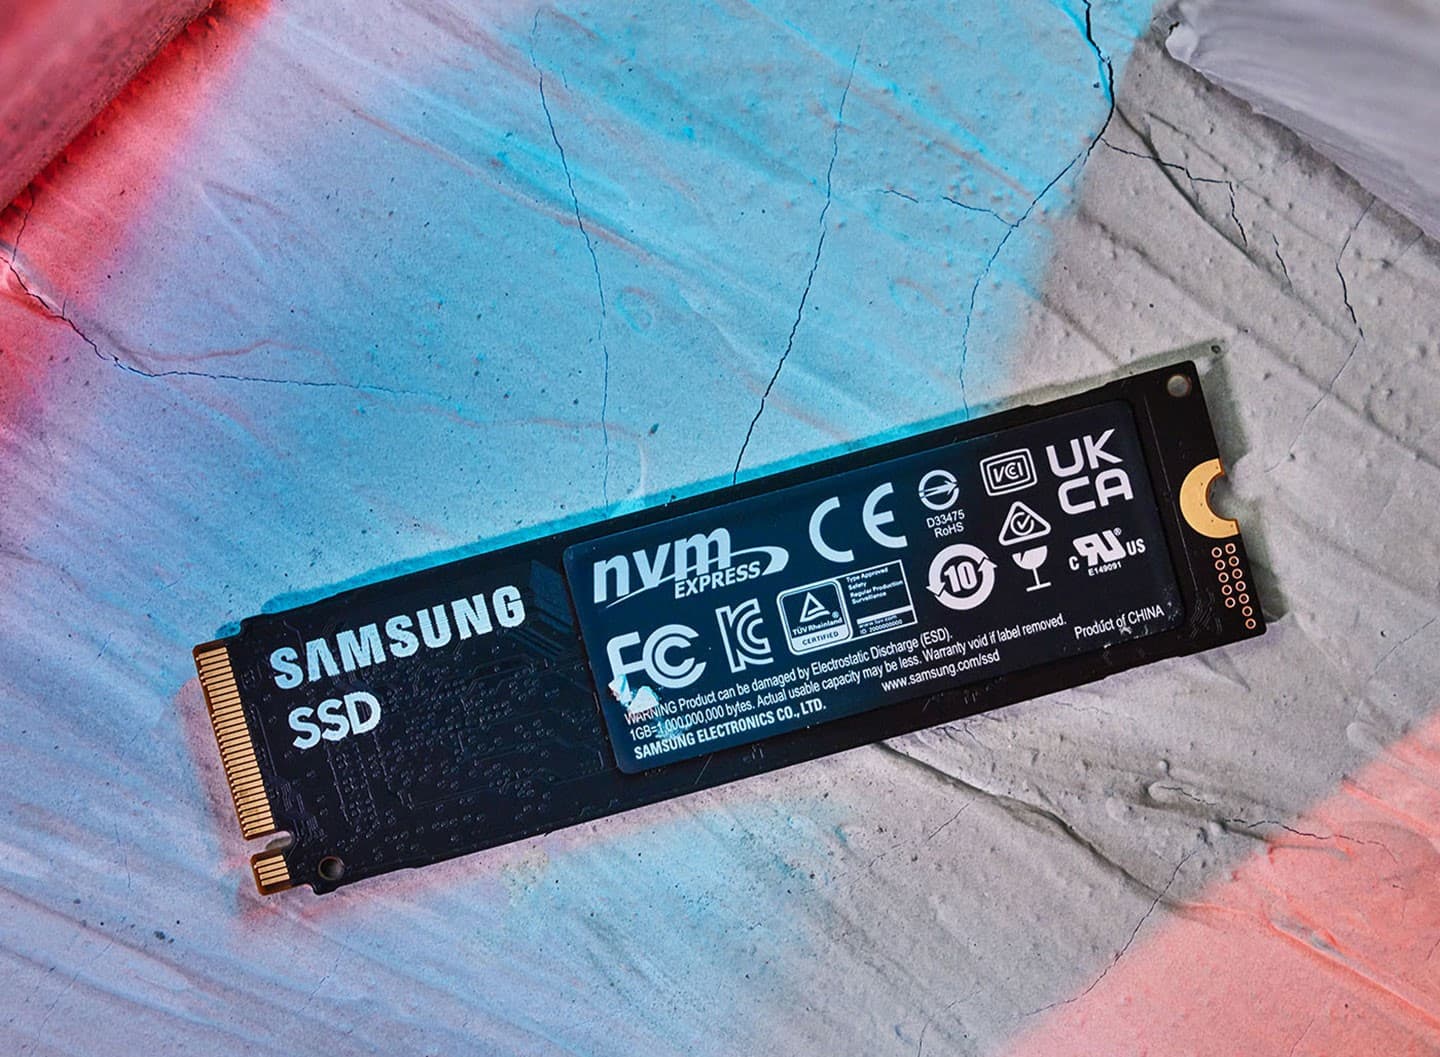 背面則有醒目的 Samsung SSD 文字，並貼了一張稍微有些厚度的銅材質散熱貼紙，上頭是各類型的安規認證標章。